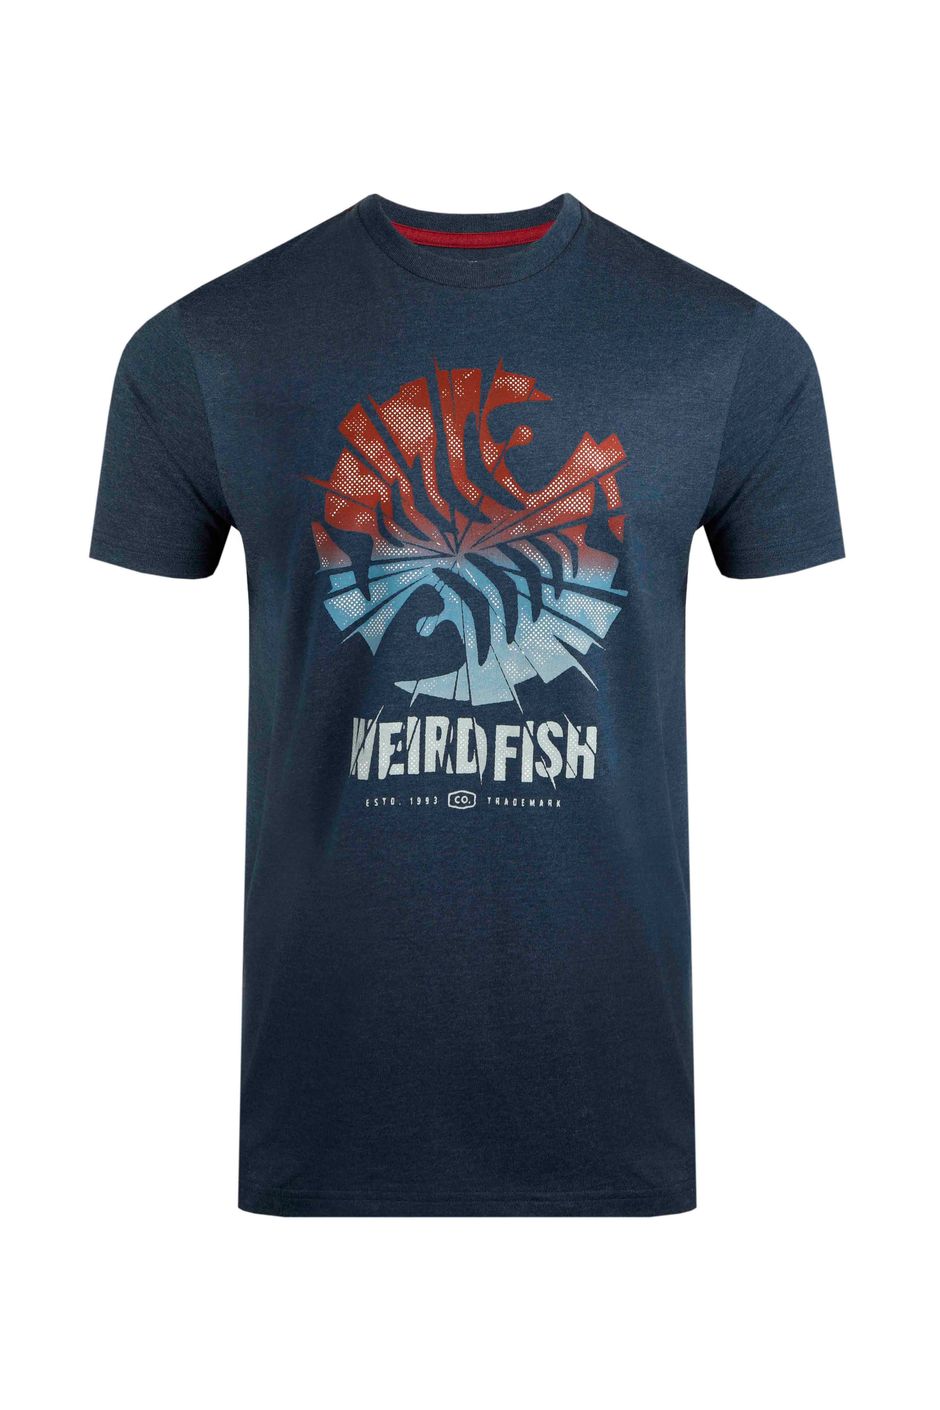 Shatter Graphic T-Shirt Federal Blue | Weird Fish